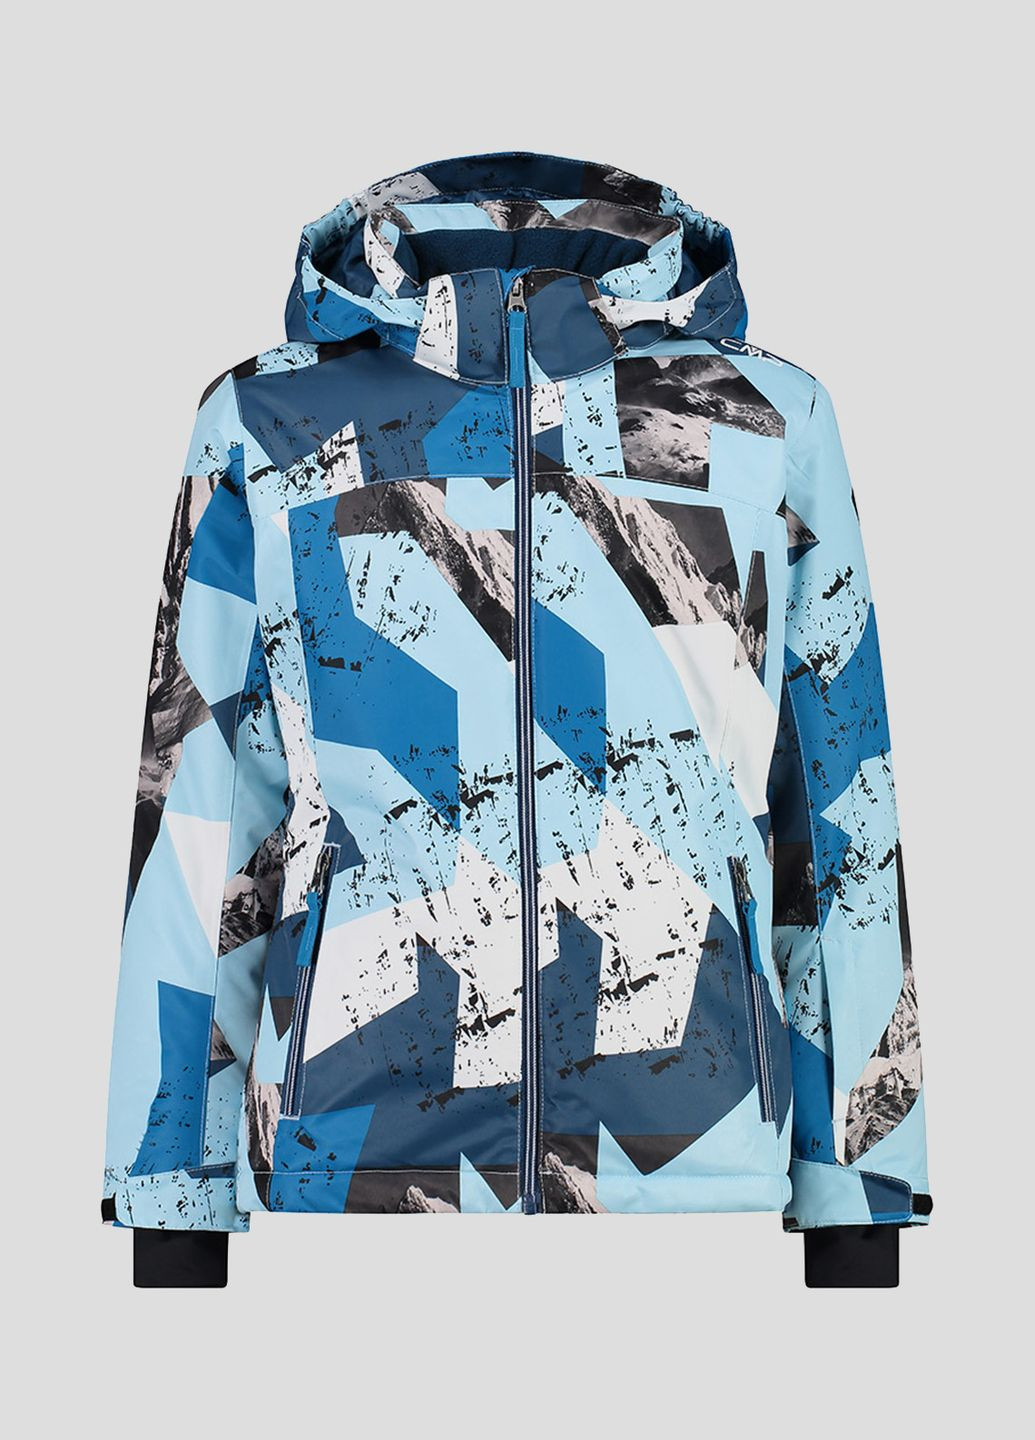 Голубая демисезонная детская лыжная куртка kid g jacket snaps hood CMP